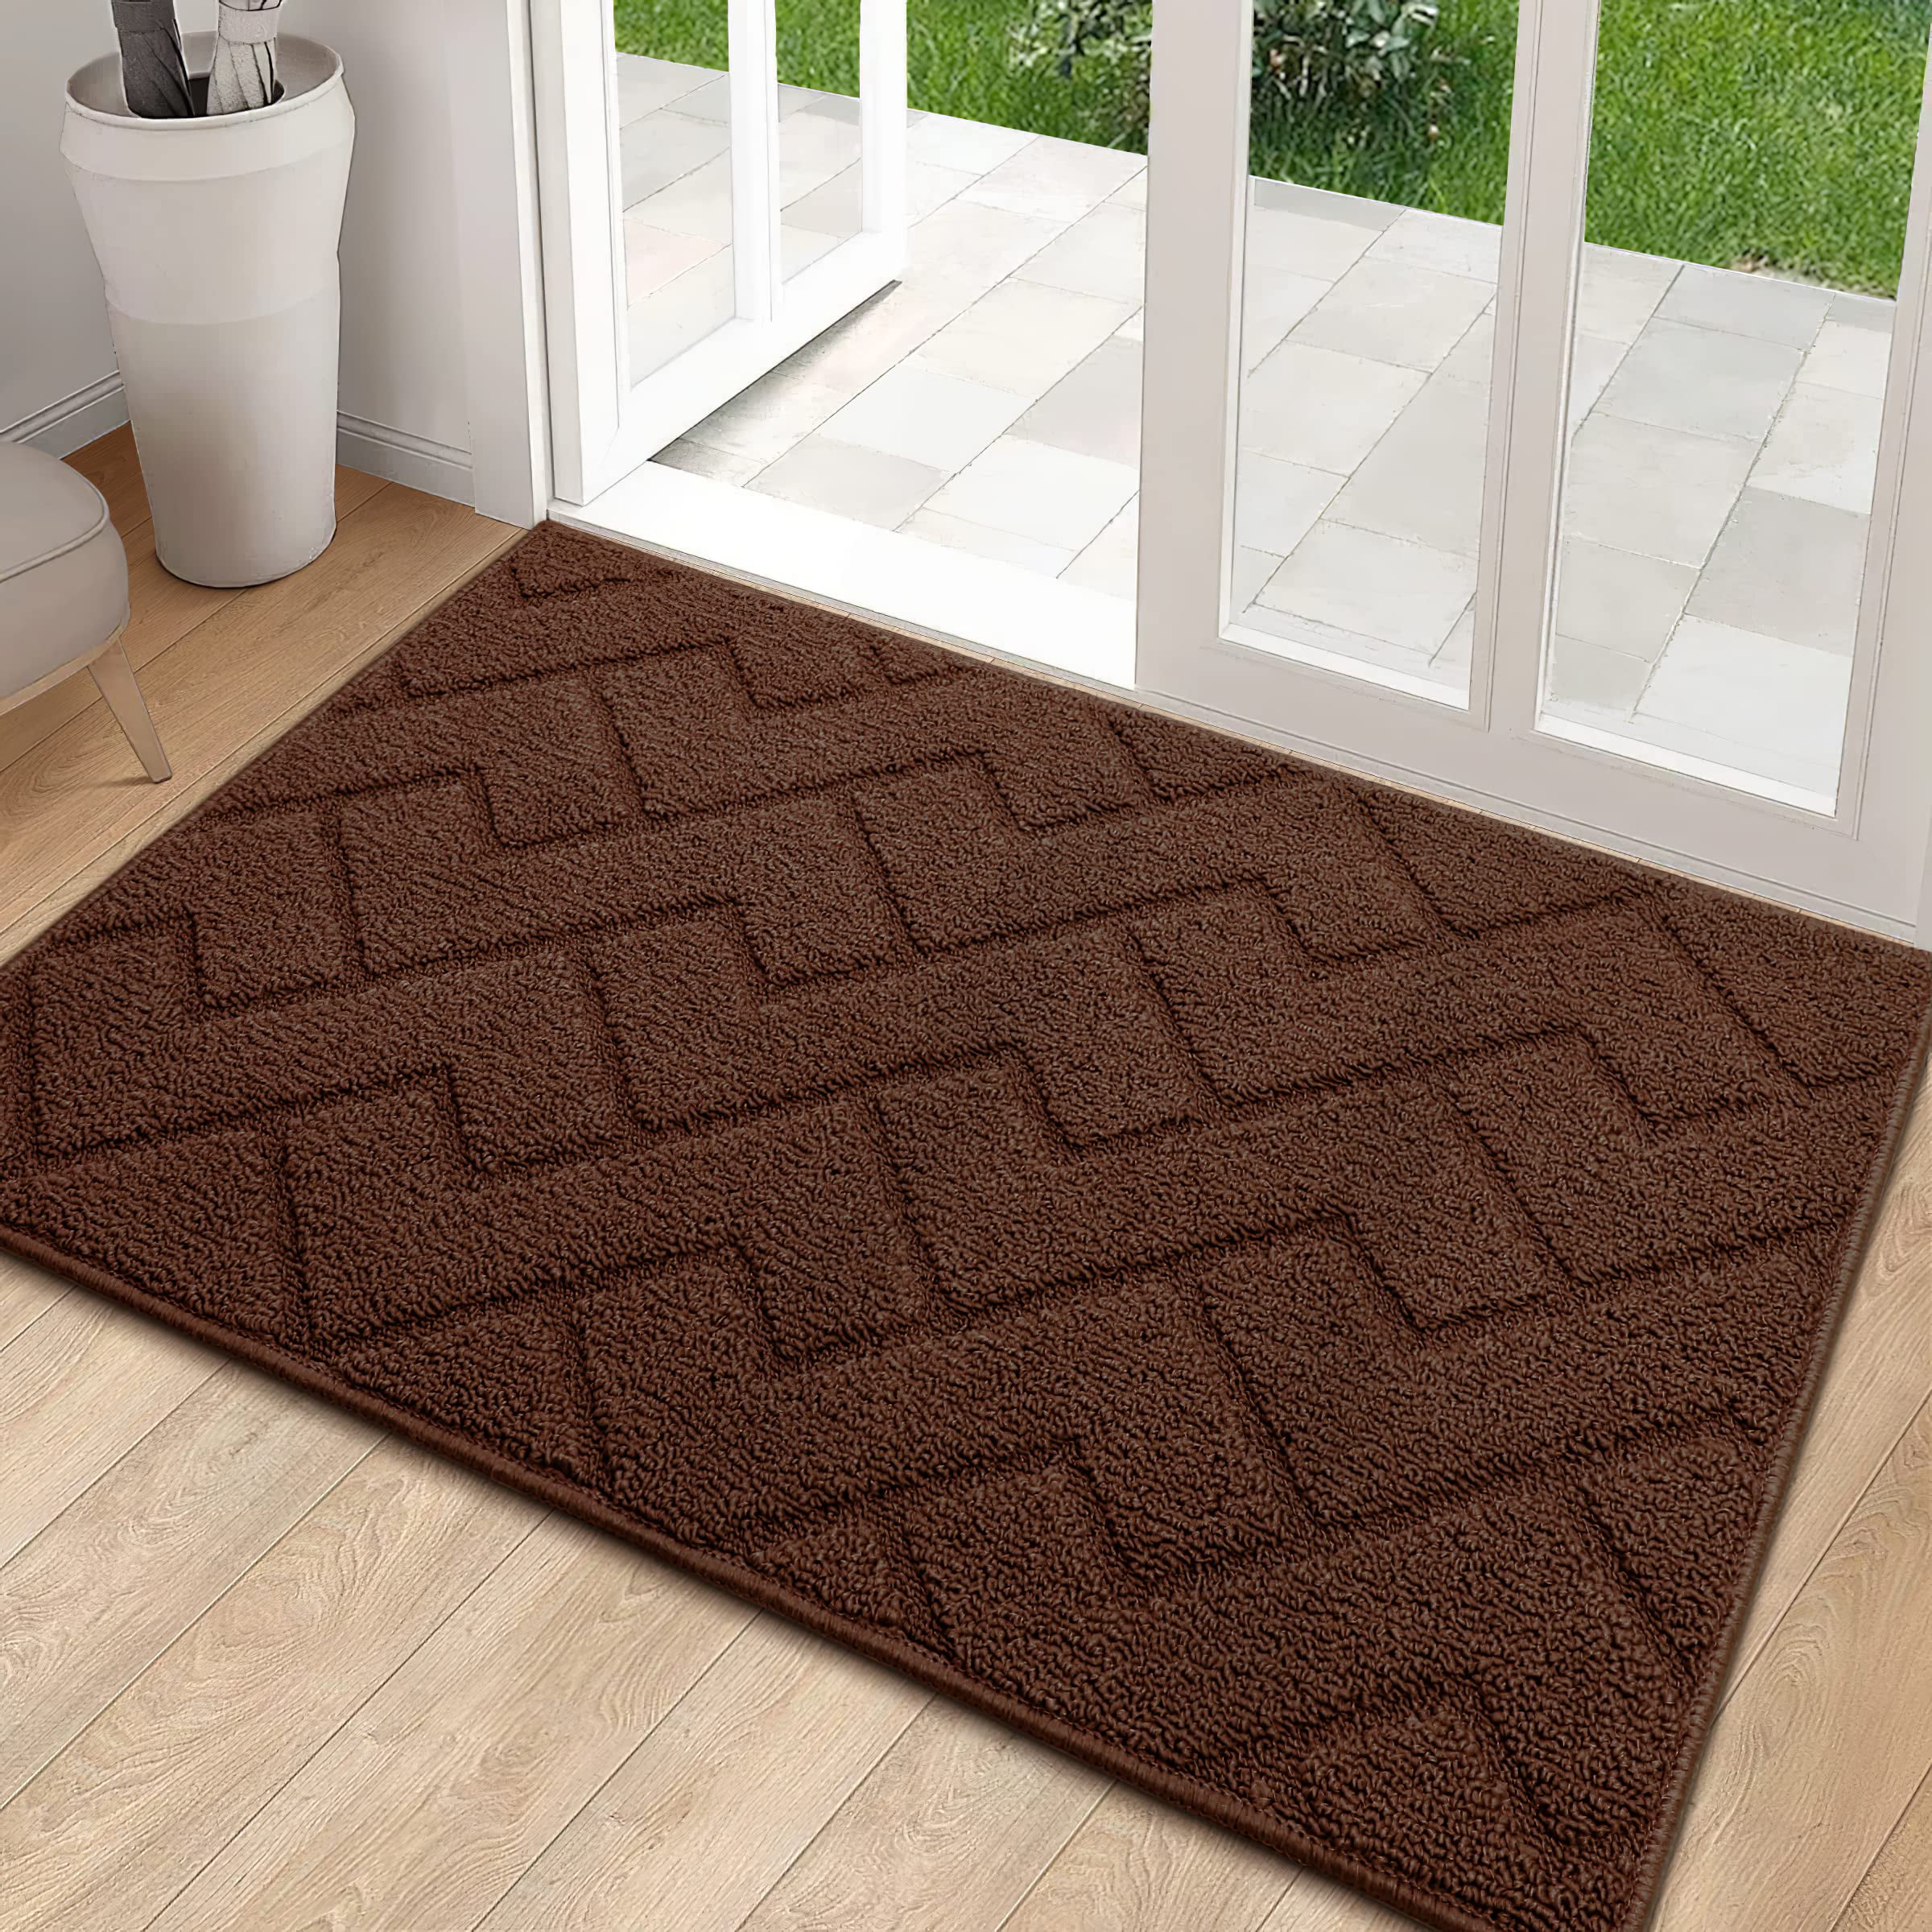 Indoor Doormat,Front Back Door Mat Rubber Backing Non Slip Door Mats  24”x35” Abs